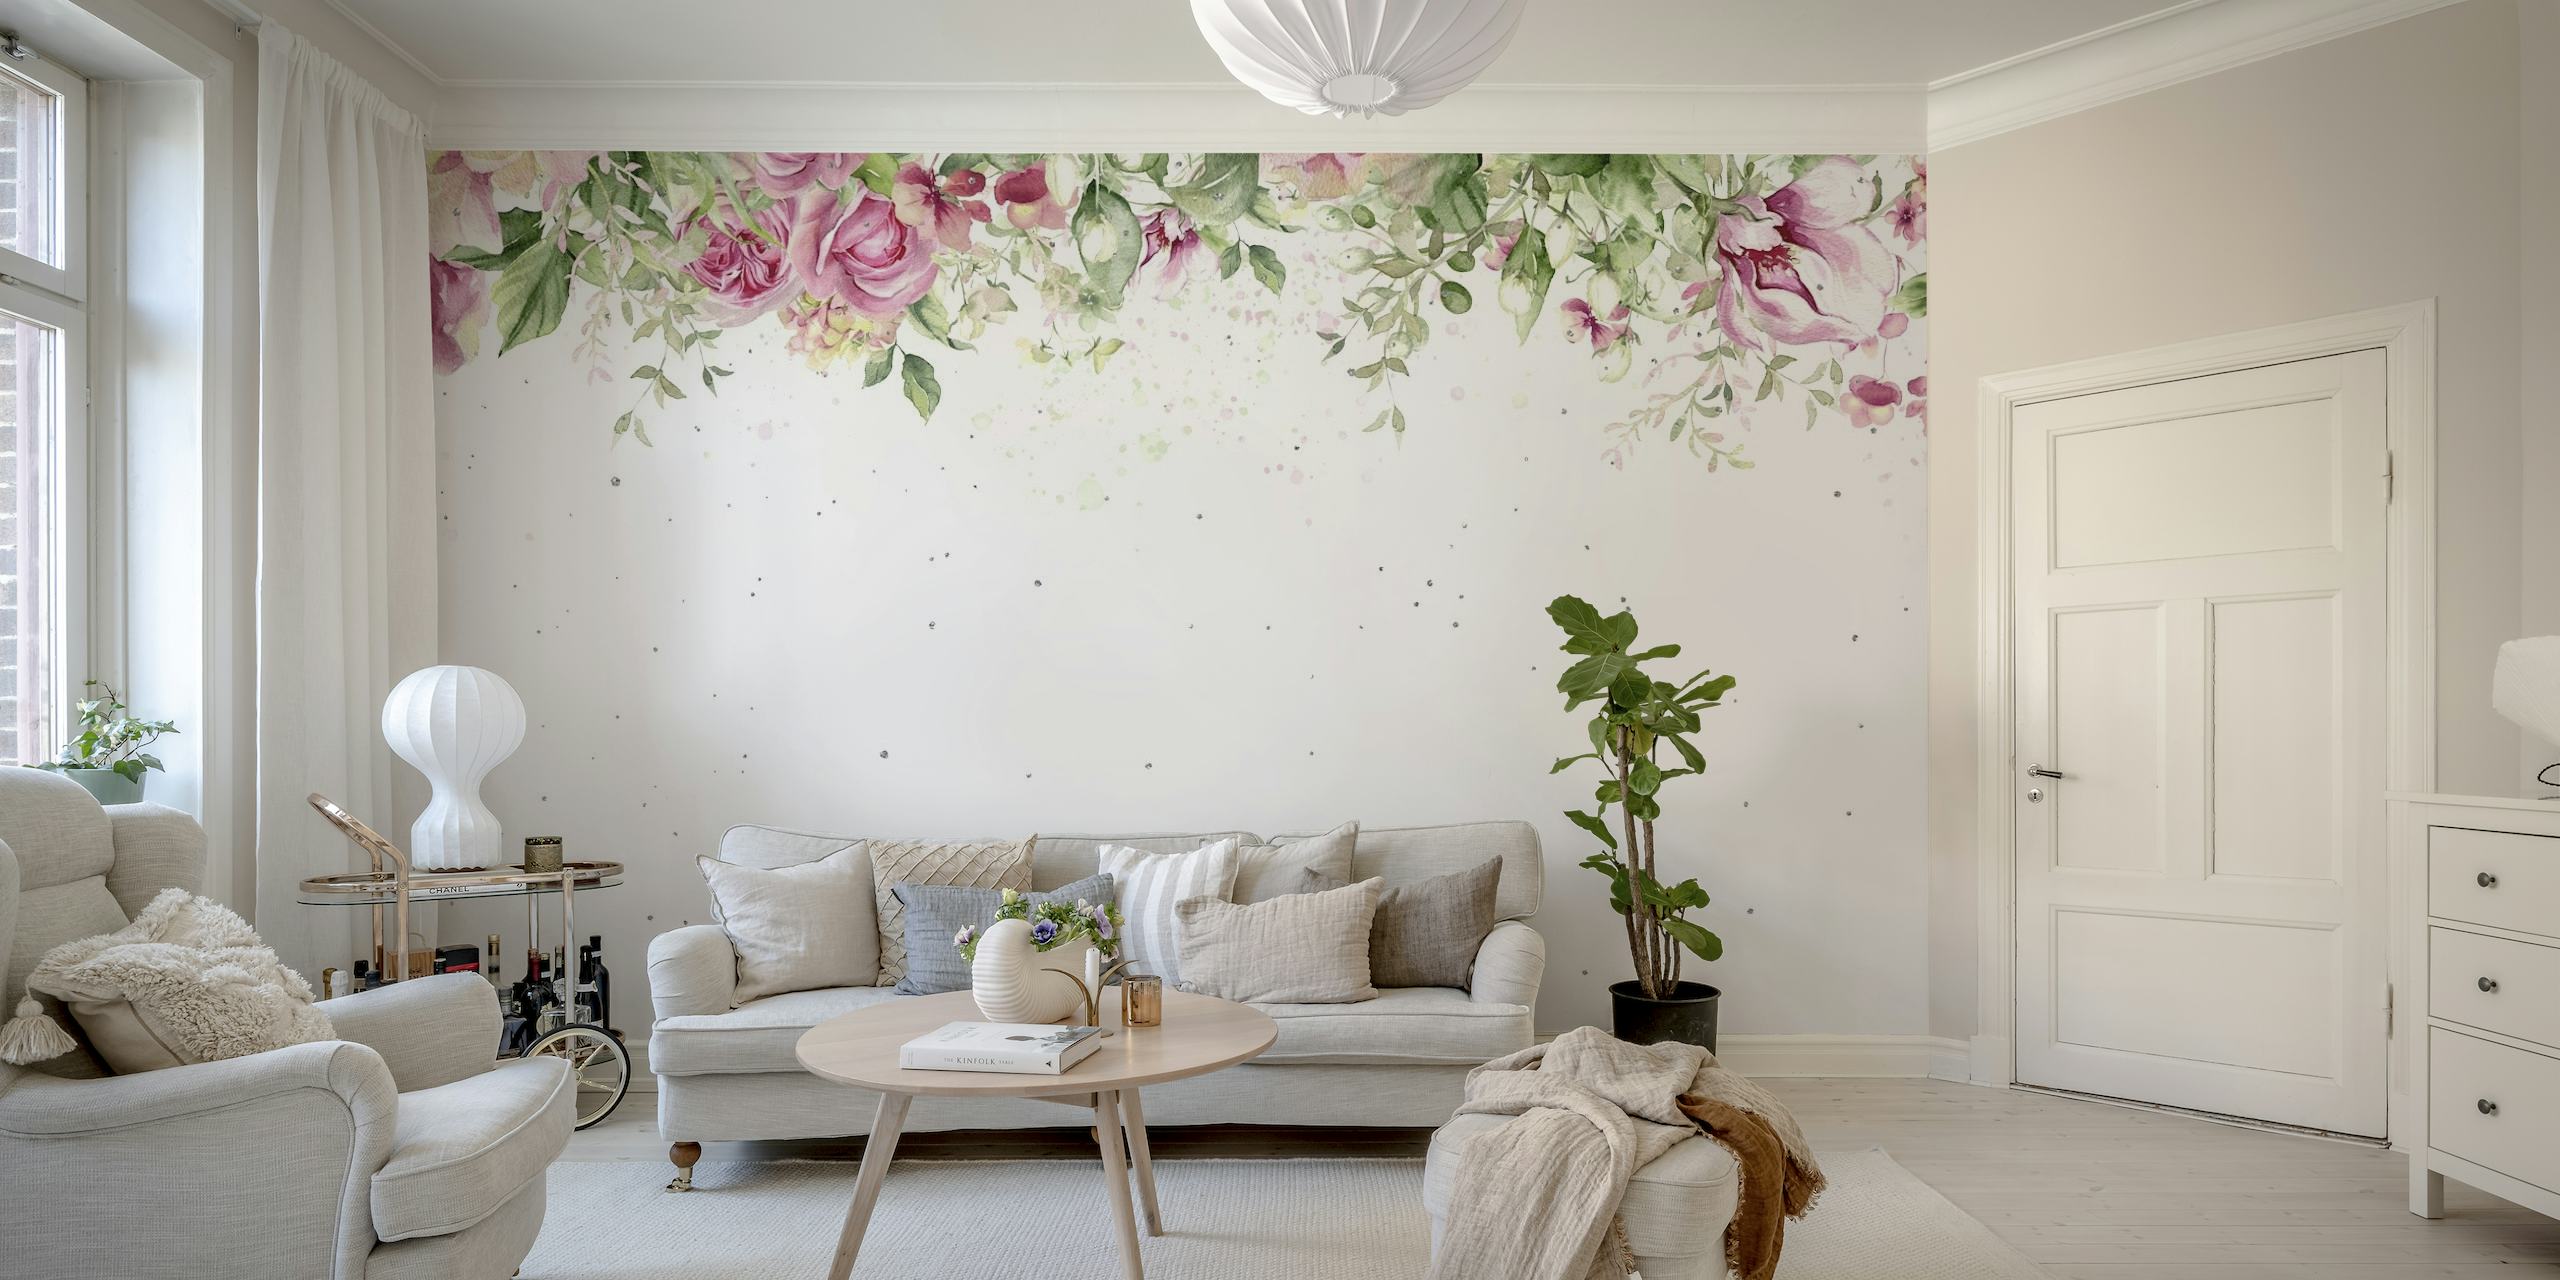 Roses aquarelles élégantes et verdure créant une bordure supérieure tranquille sur une fresque murale